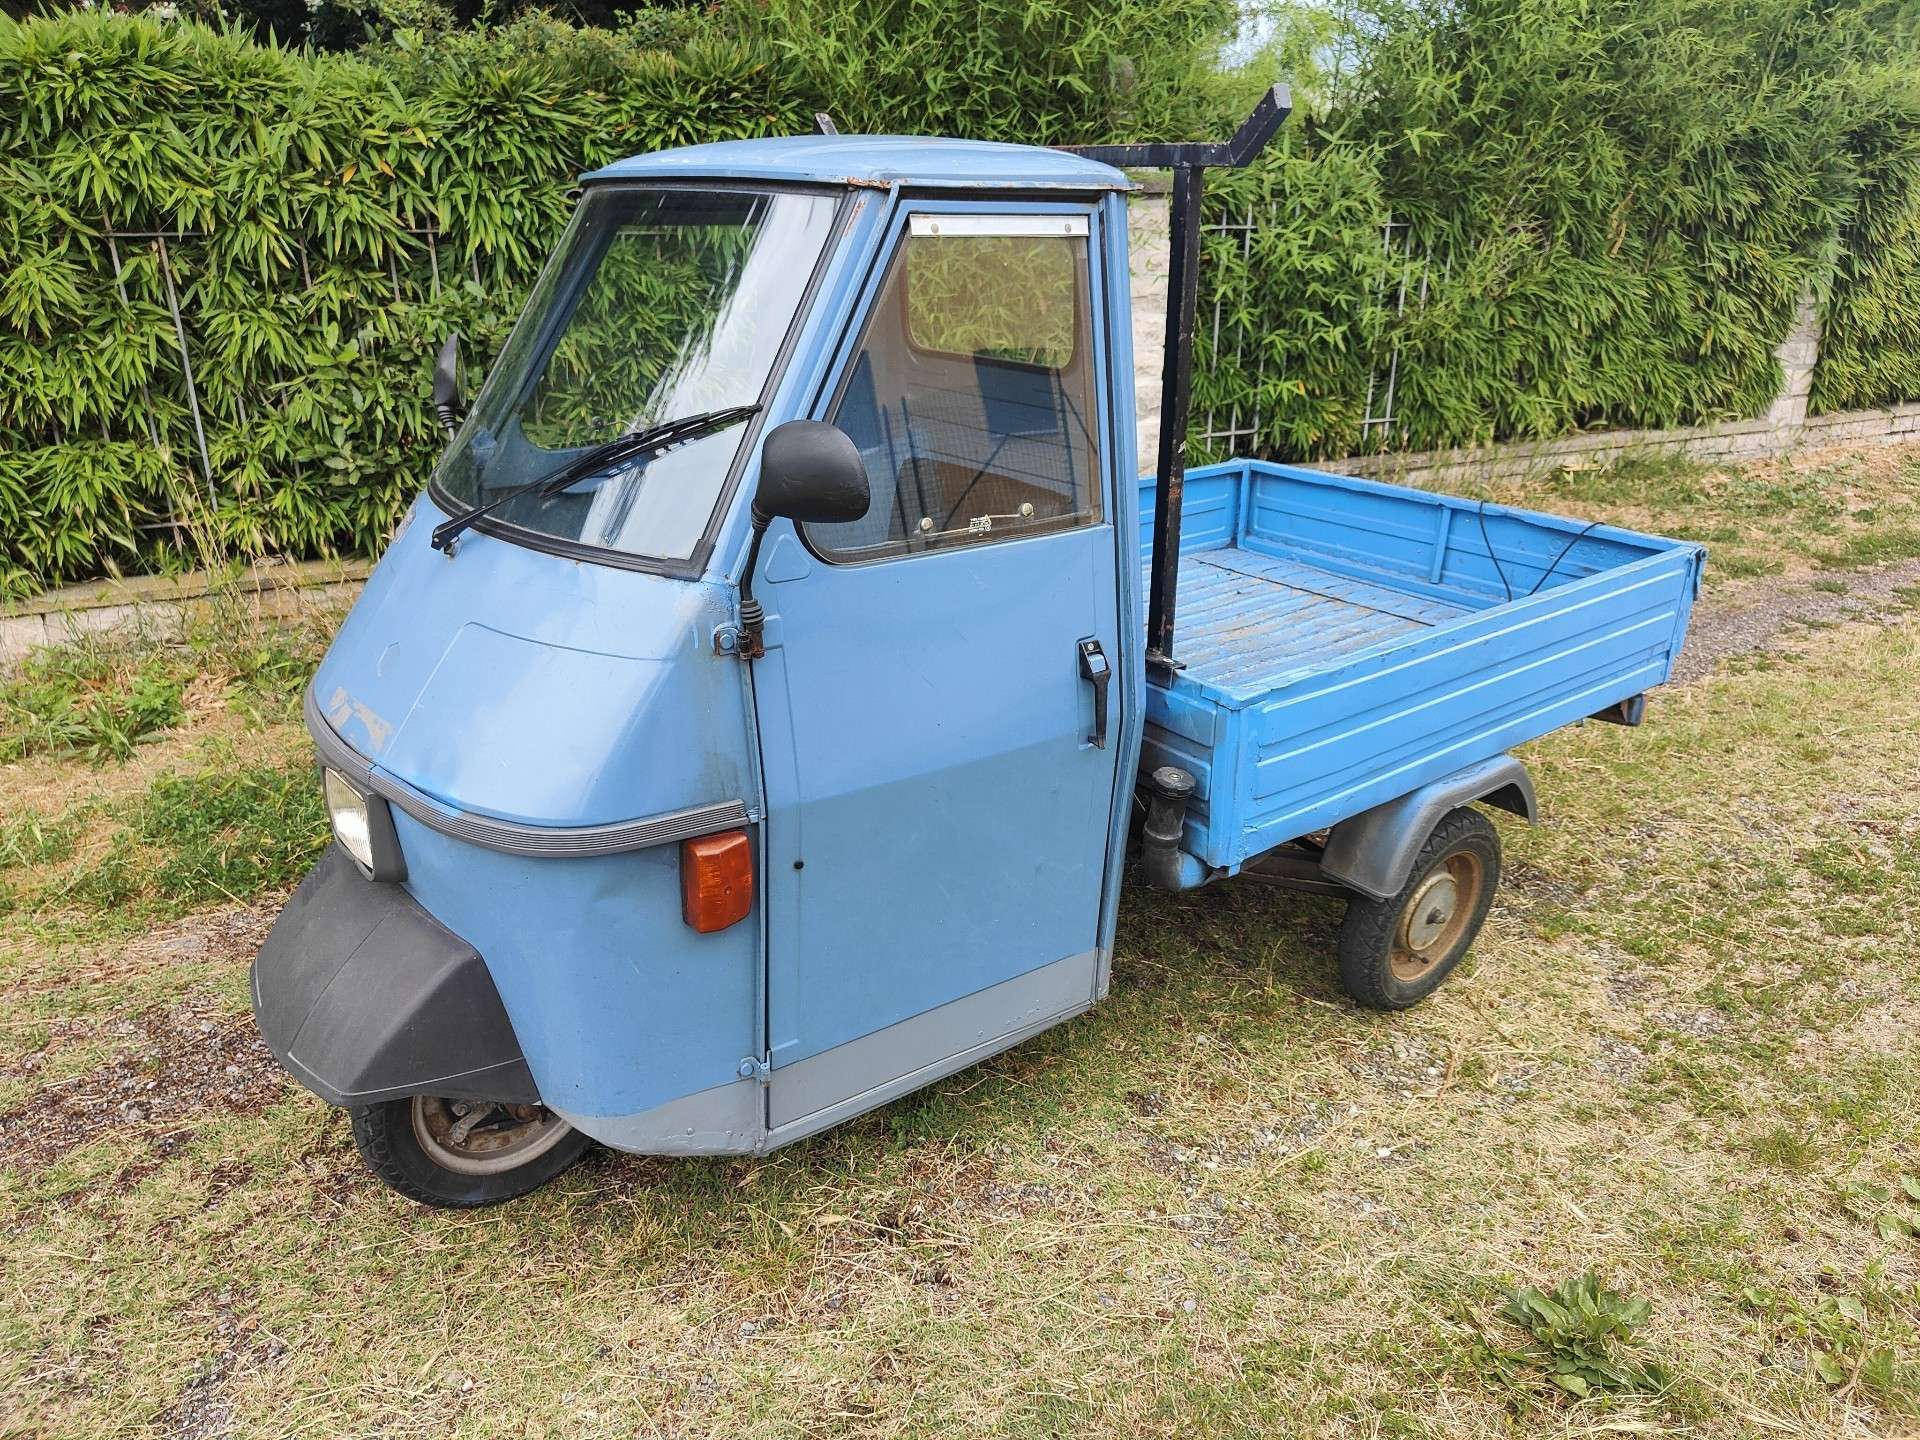 Piaggio Ape Other in Blue used in Pian Camuno - Brescia - Bs for € 2,300.-